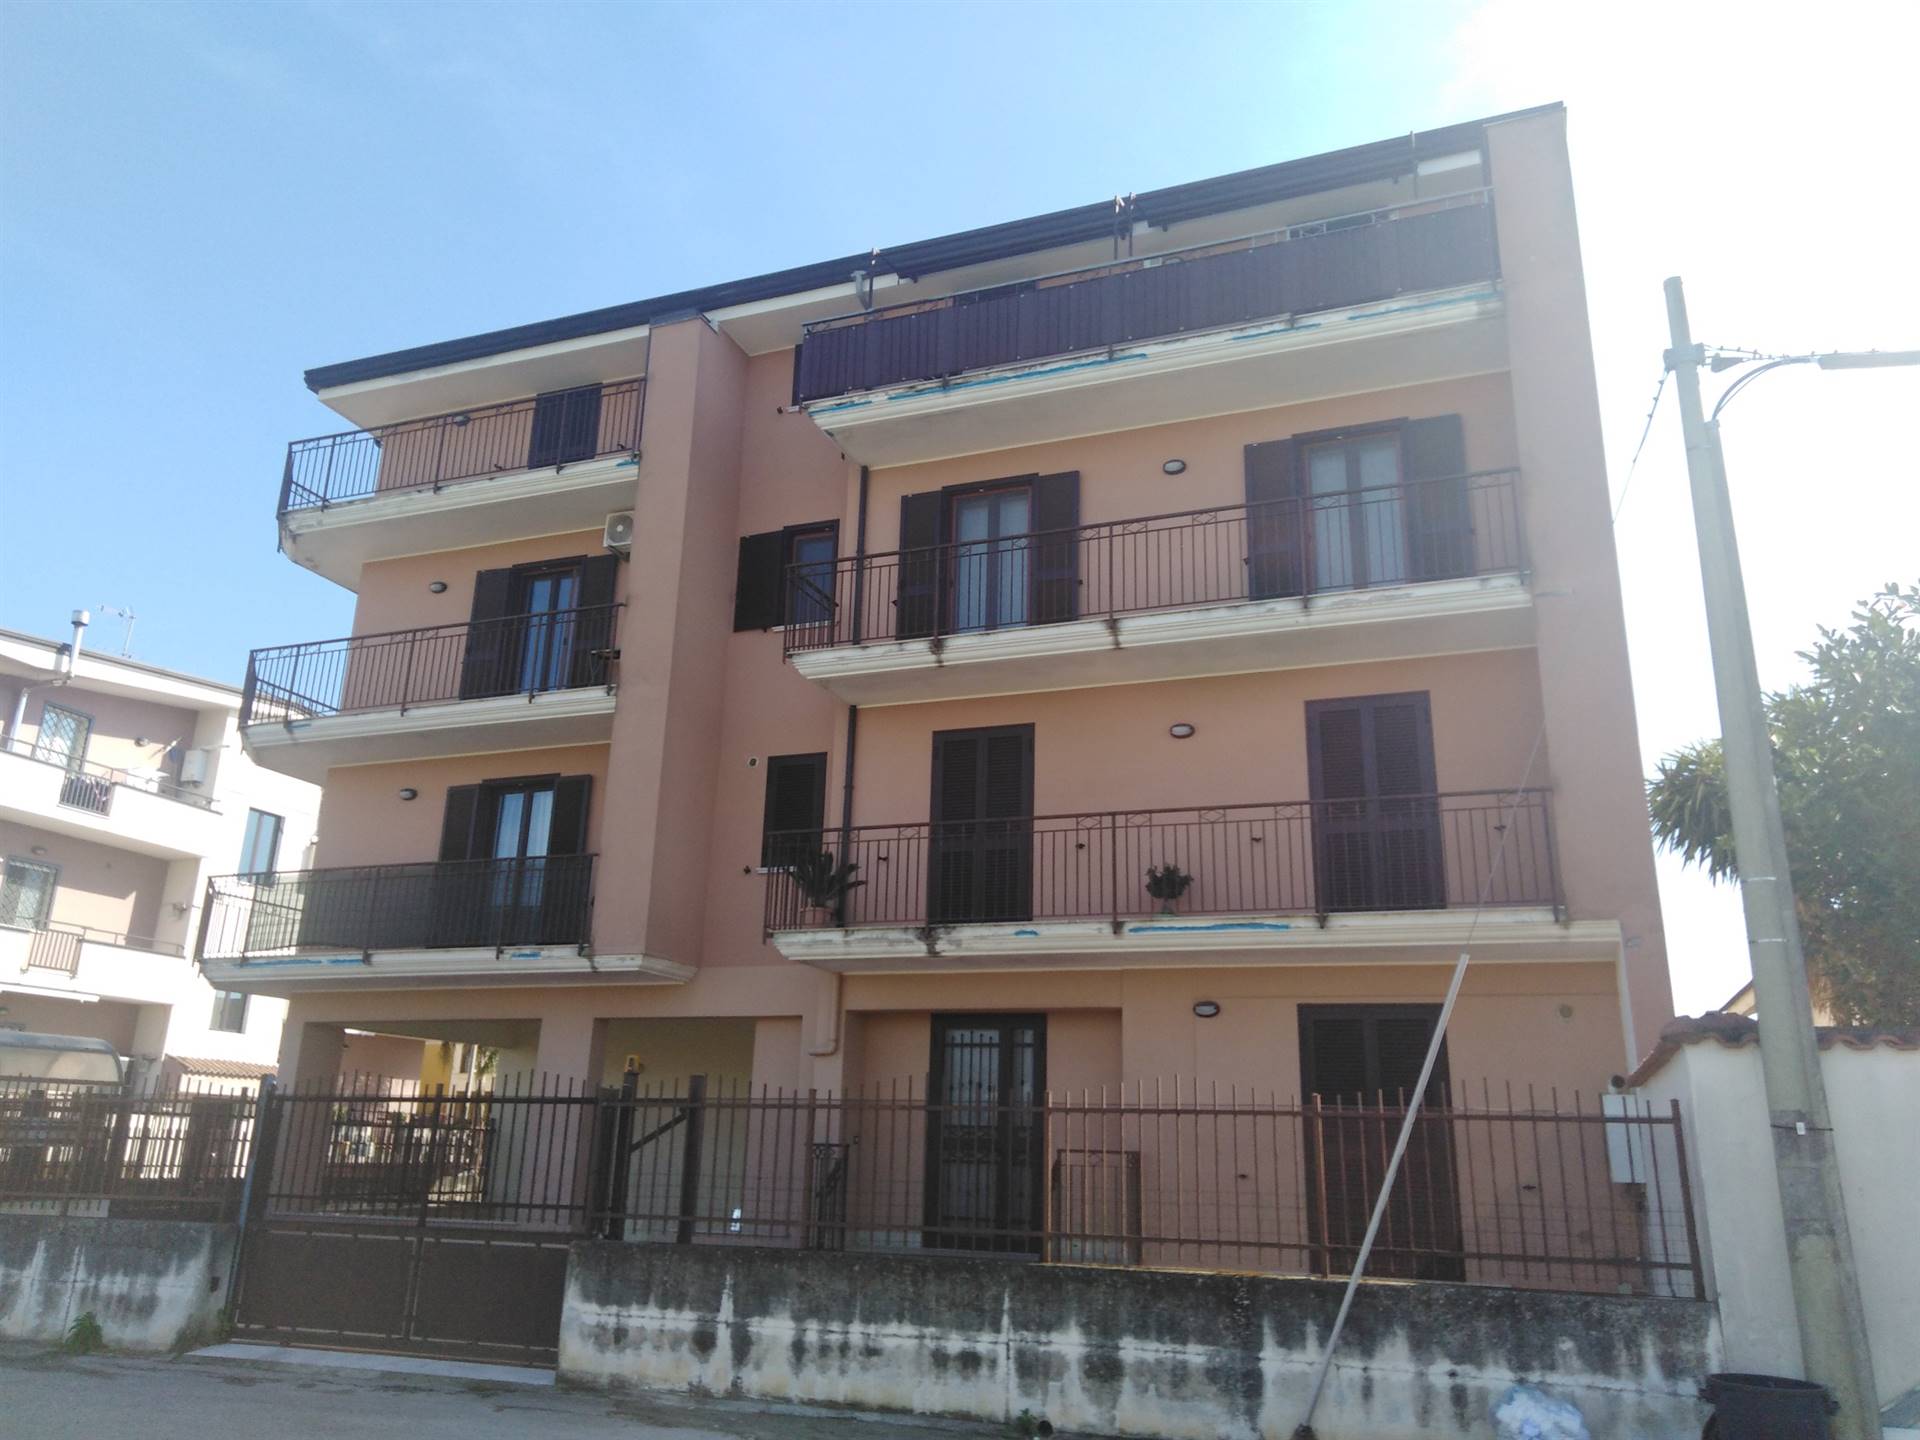 Appartamento in vendita a San Marco Evangelista, 3 locali, prezzo € 145.000 | PortaleAgenzieImmobiliari.it